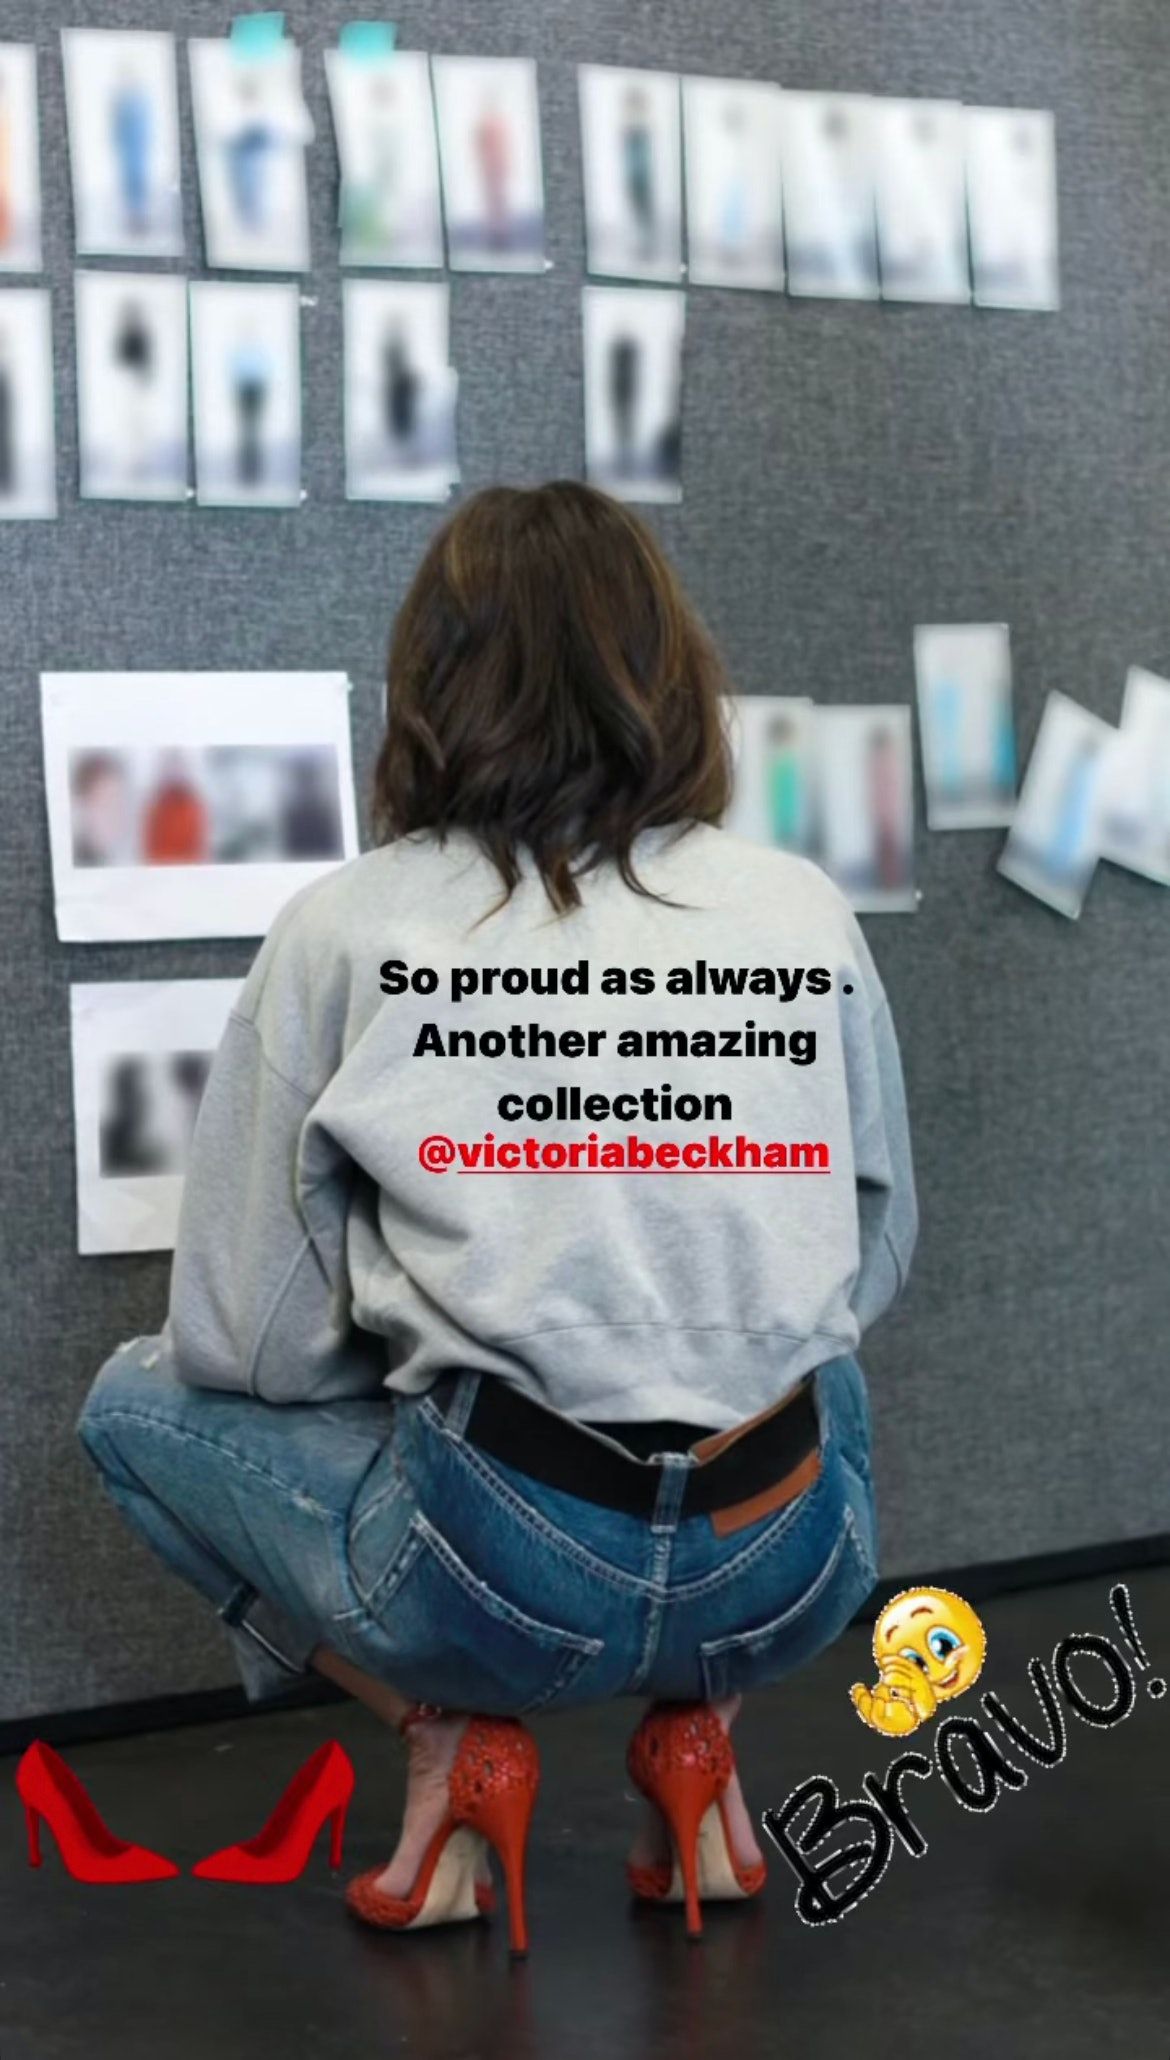 L'ultima collezione di moda di Victoria Beckham è stata ispirata da David